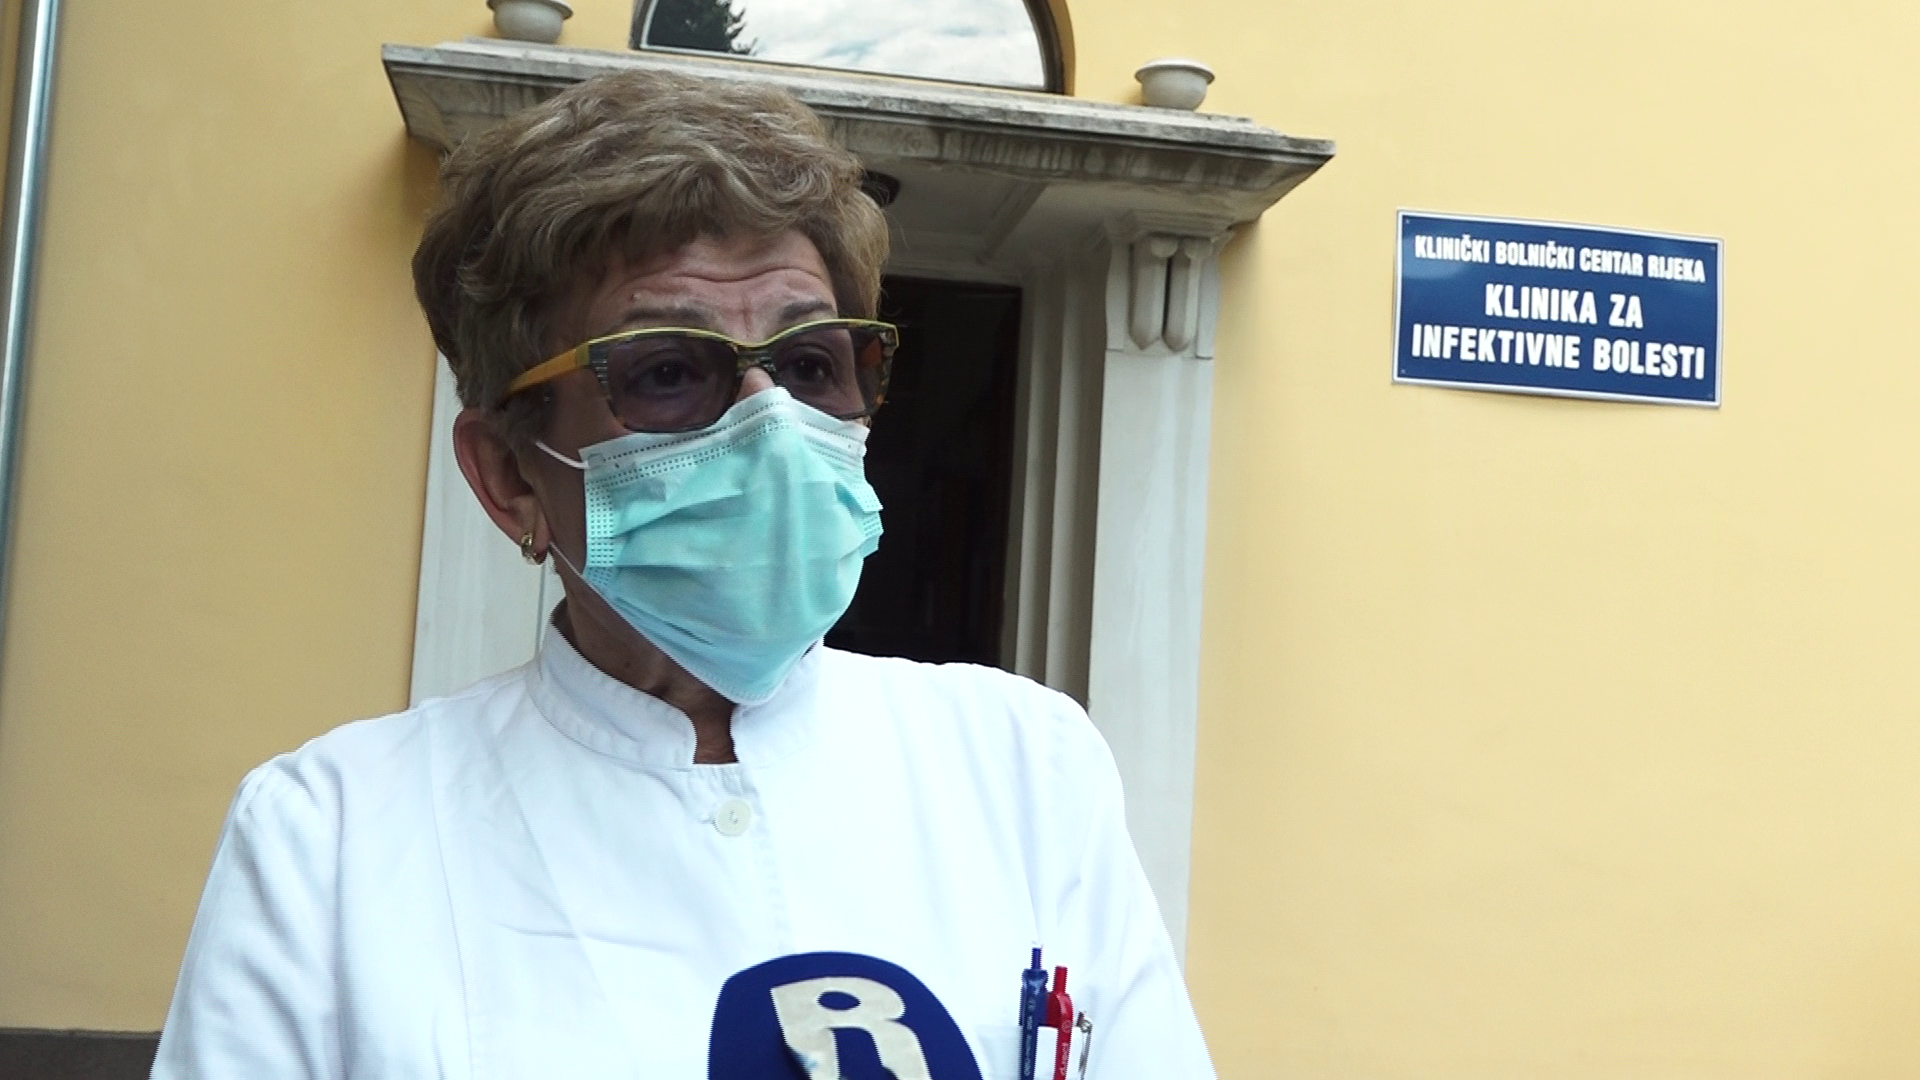 KBC Rijeka: Hospitalizirano troje pacijenata s koronavirusom, svi s težim simptomima